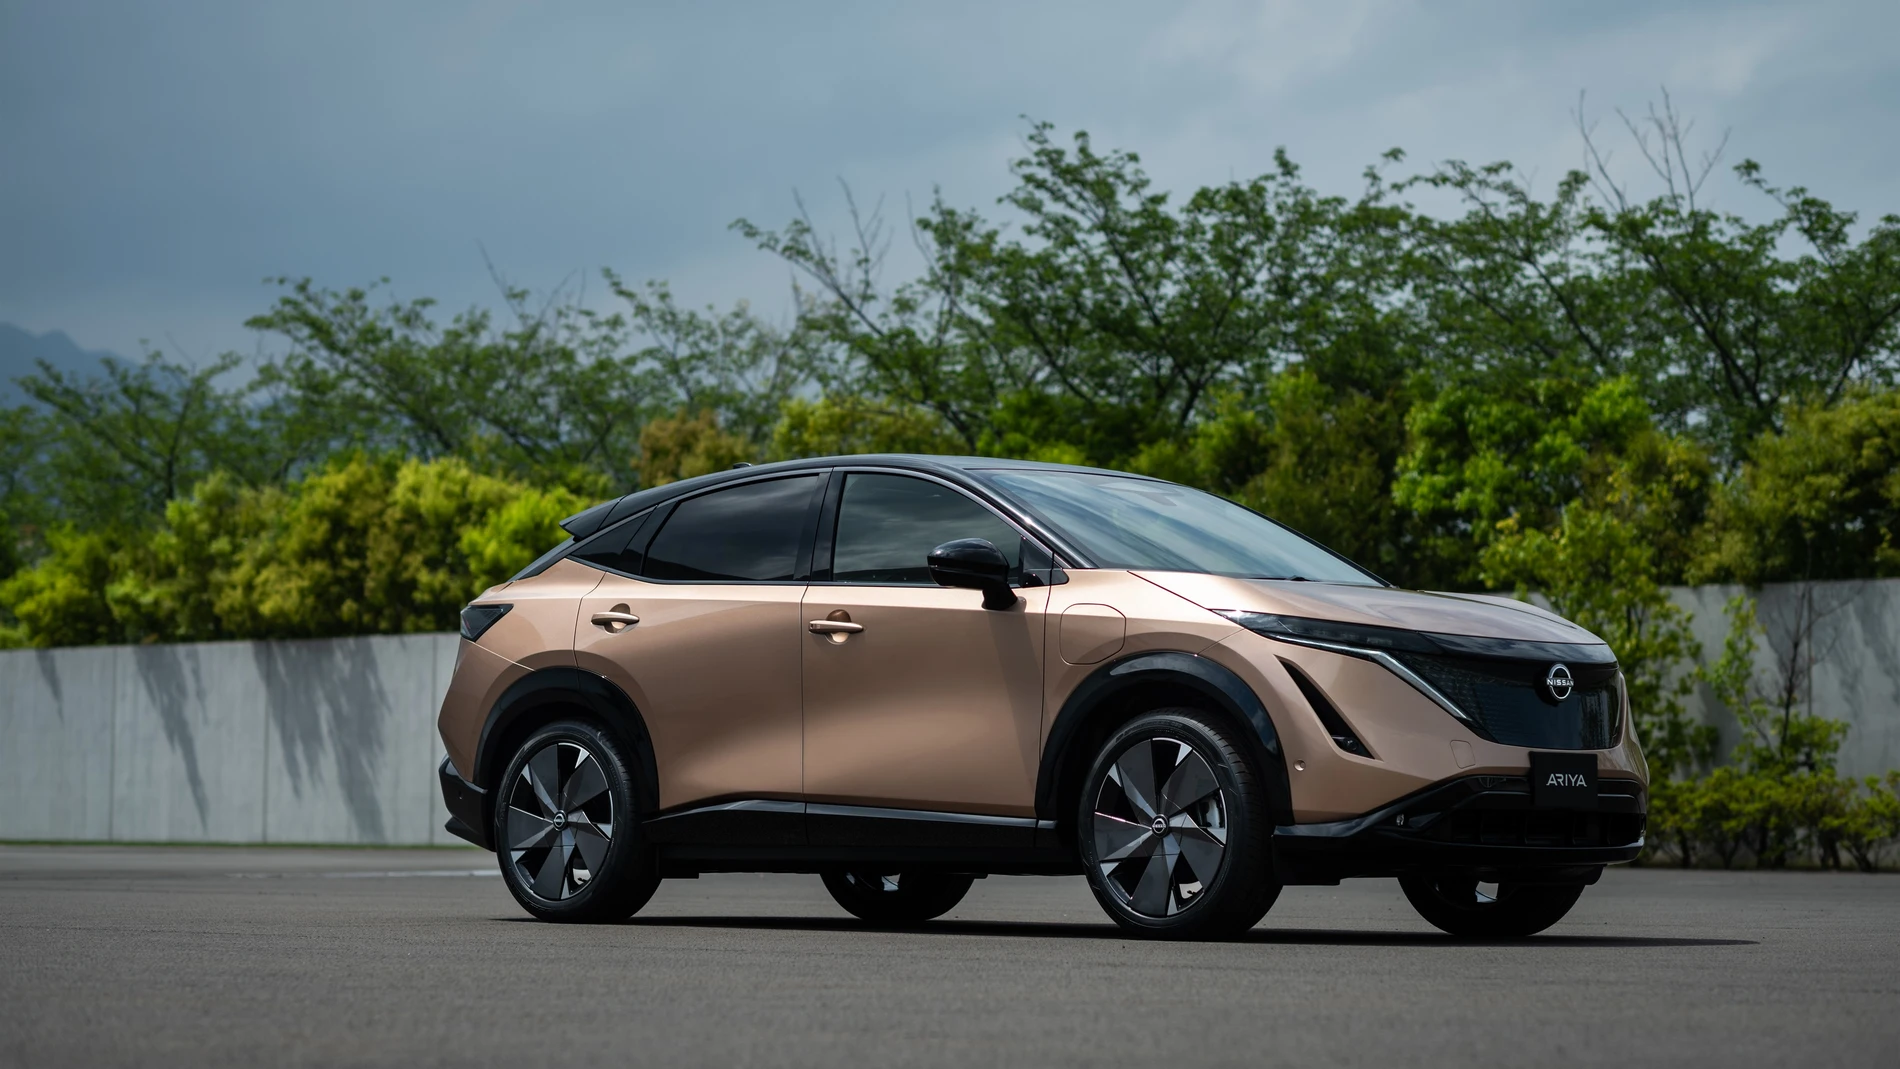 Economía/Motor.- Nissan mostrará su todocamino eléctrico Ariya en el Salón del Automóvil de Pekín